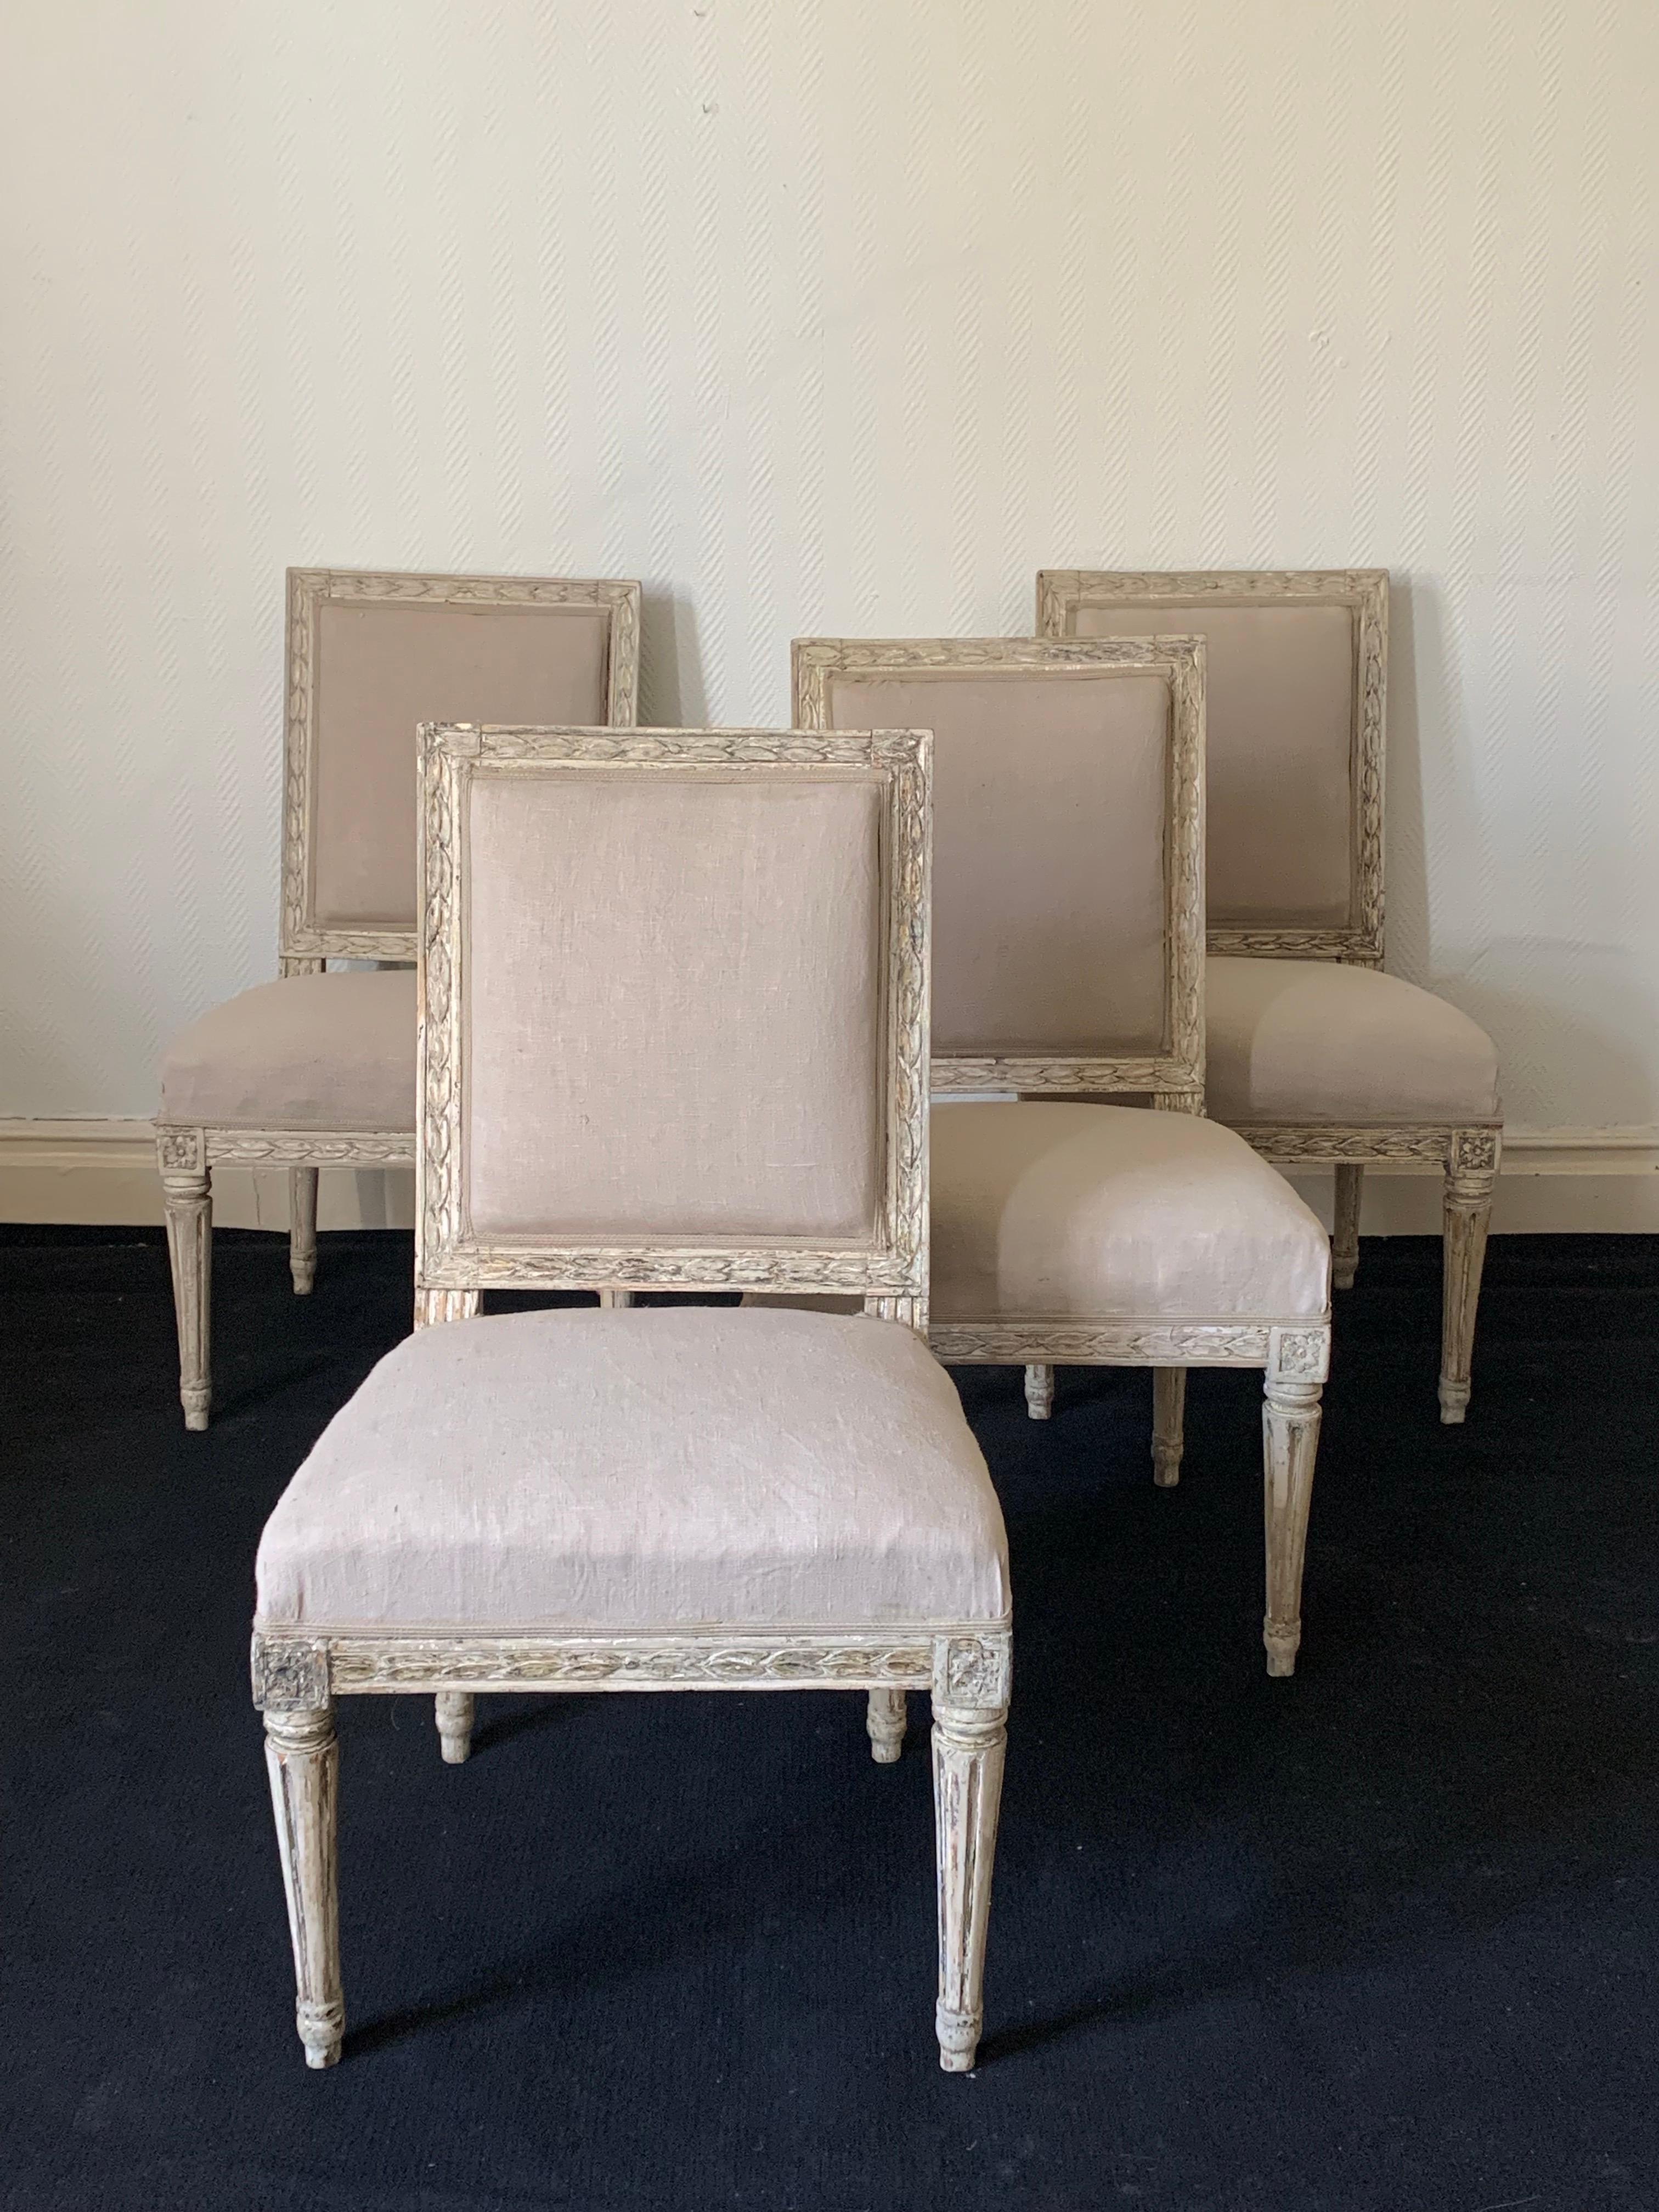 Quatre fauteuils de style gustavien fabriqués en Suède vers 1790. Les couleurs secondaires des chaises ont été enlevées et ce qui reste, c'est la couleur originale.